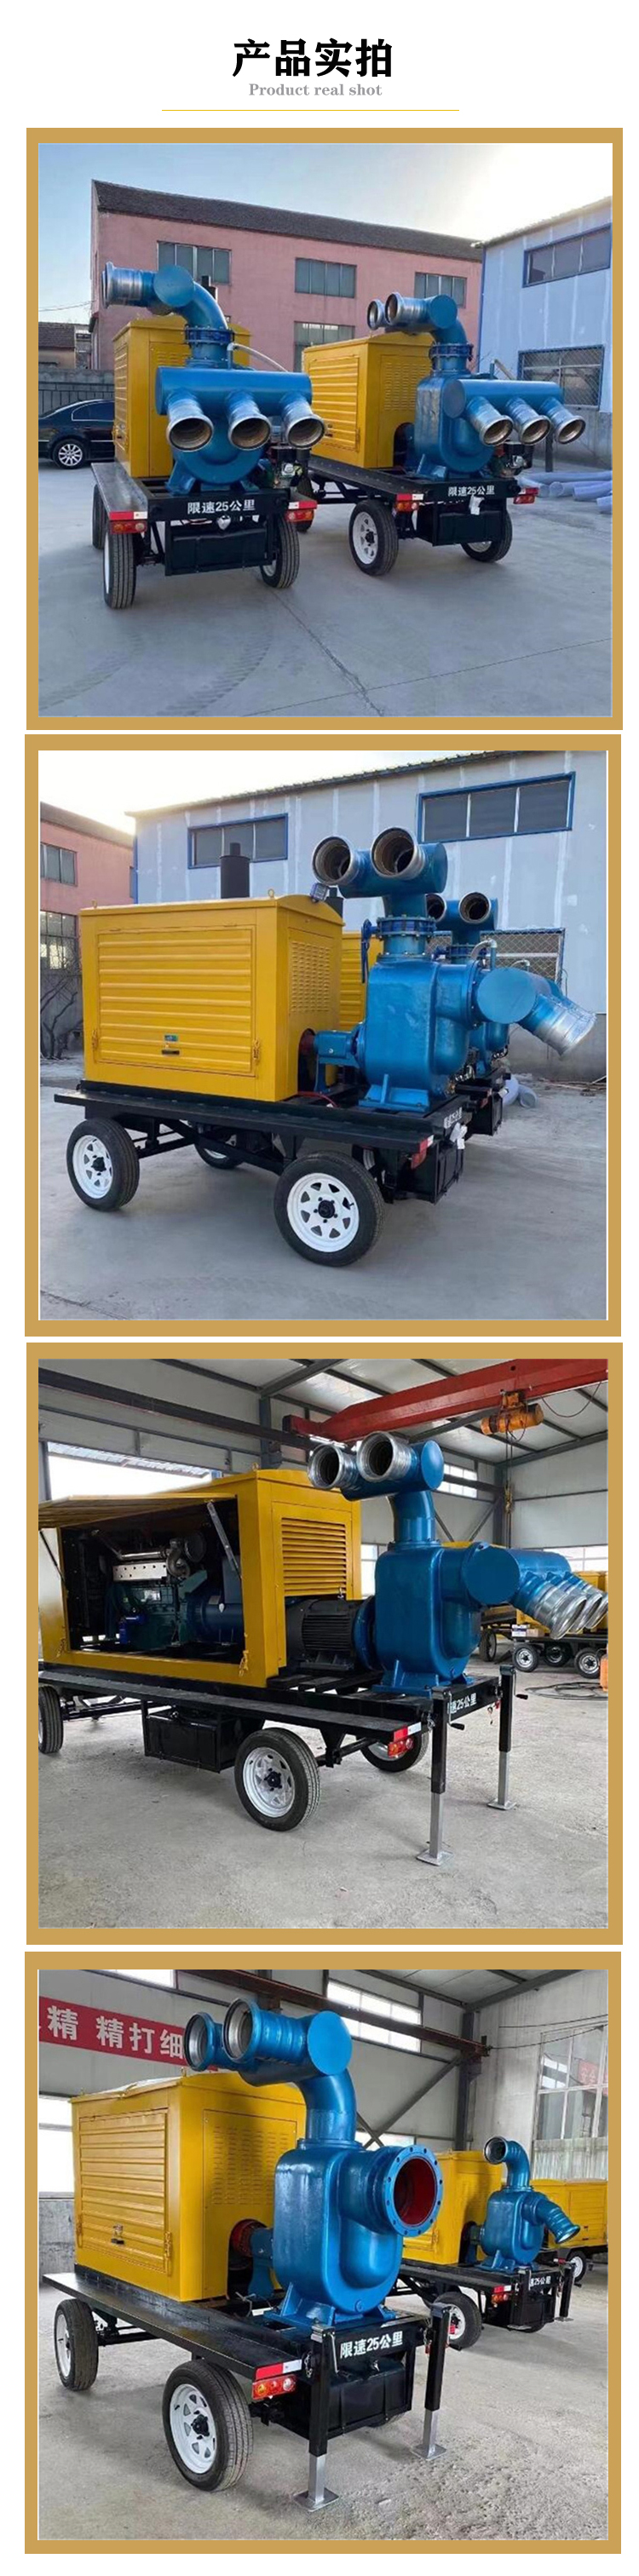 1200方柴油水泵美国瑟维尔机械 应急防汛泵车  防洪排水